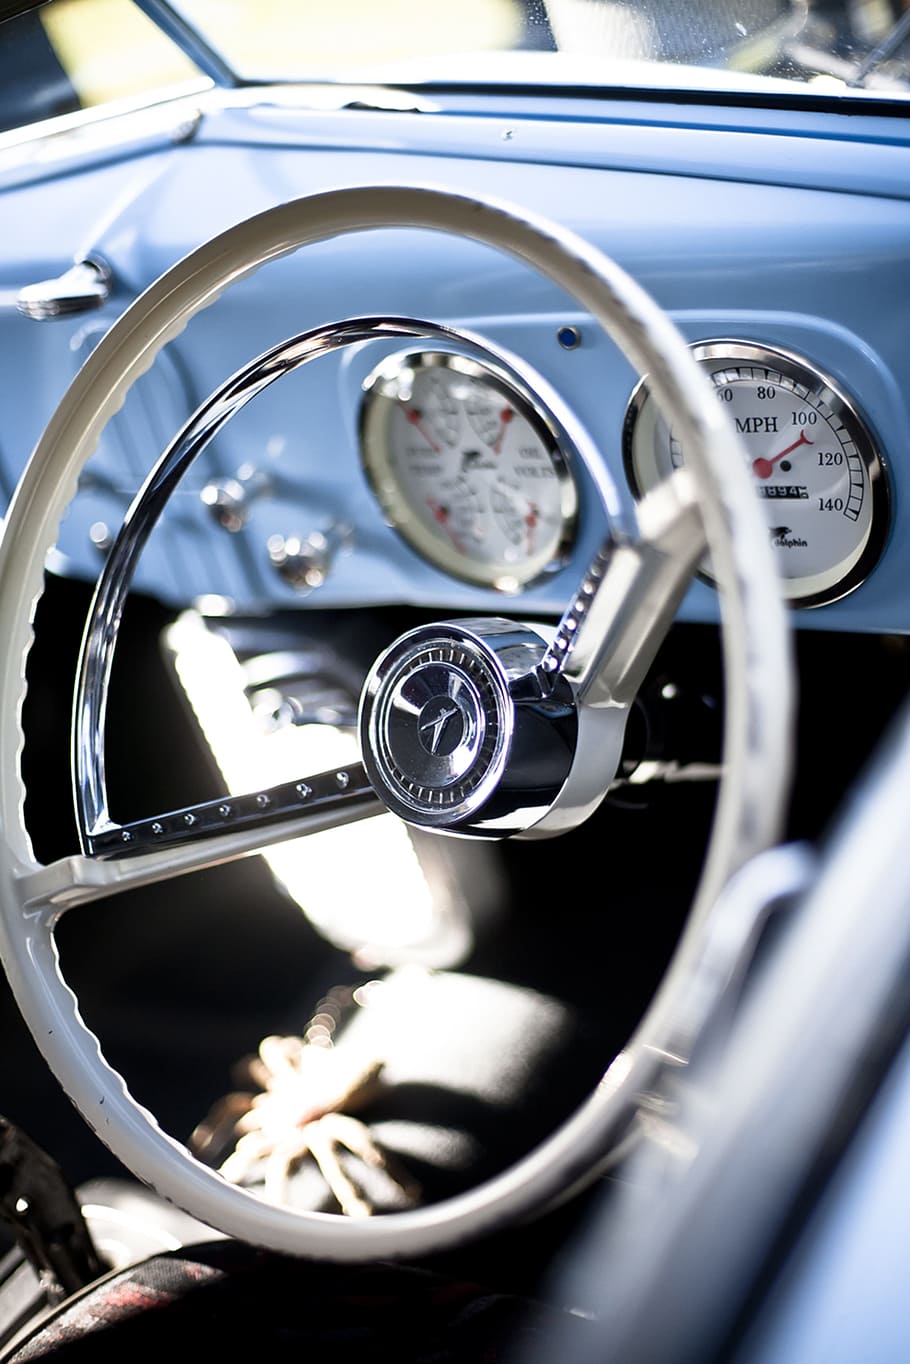 gris, acero inoxidable, rueda del vehículo, volante, cabina, vintage, automóvil, automóvil clásico, automóviles, automóviles antiguos